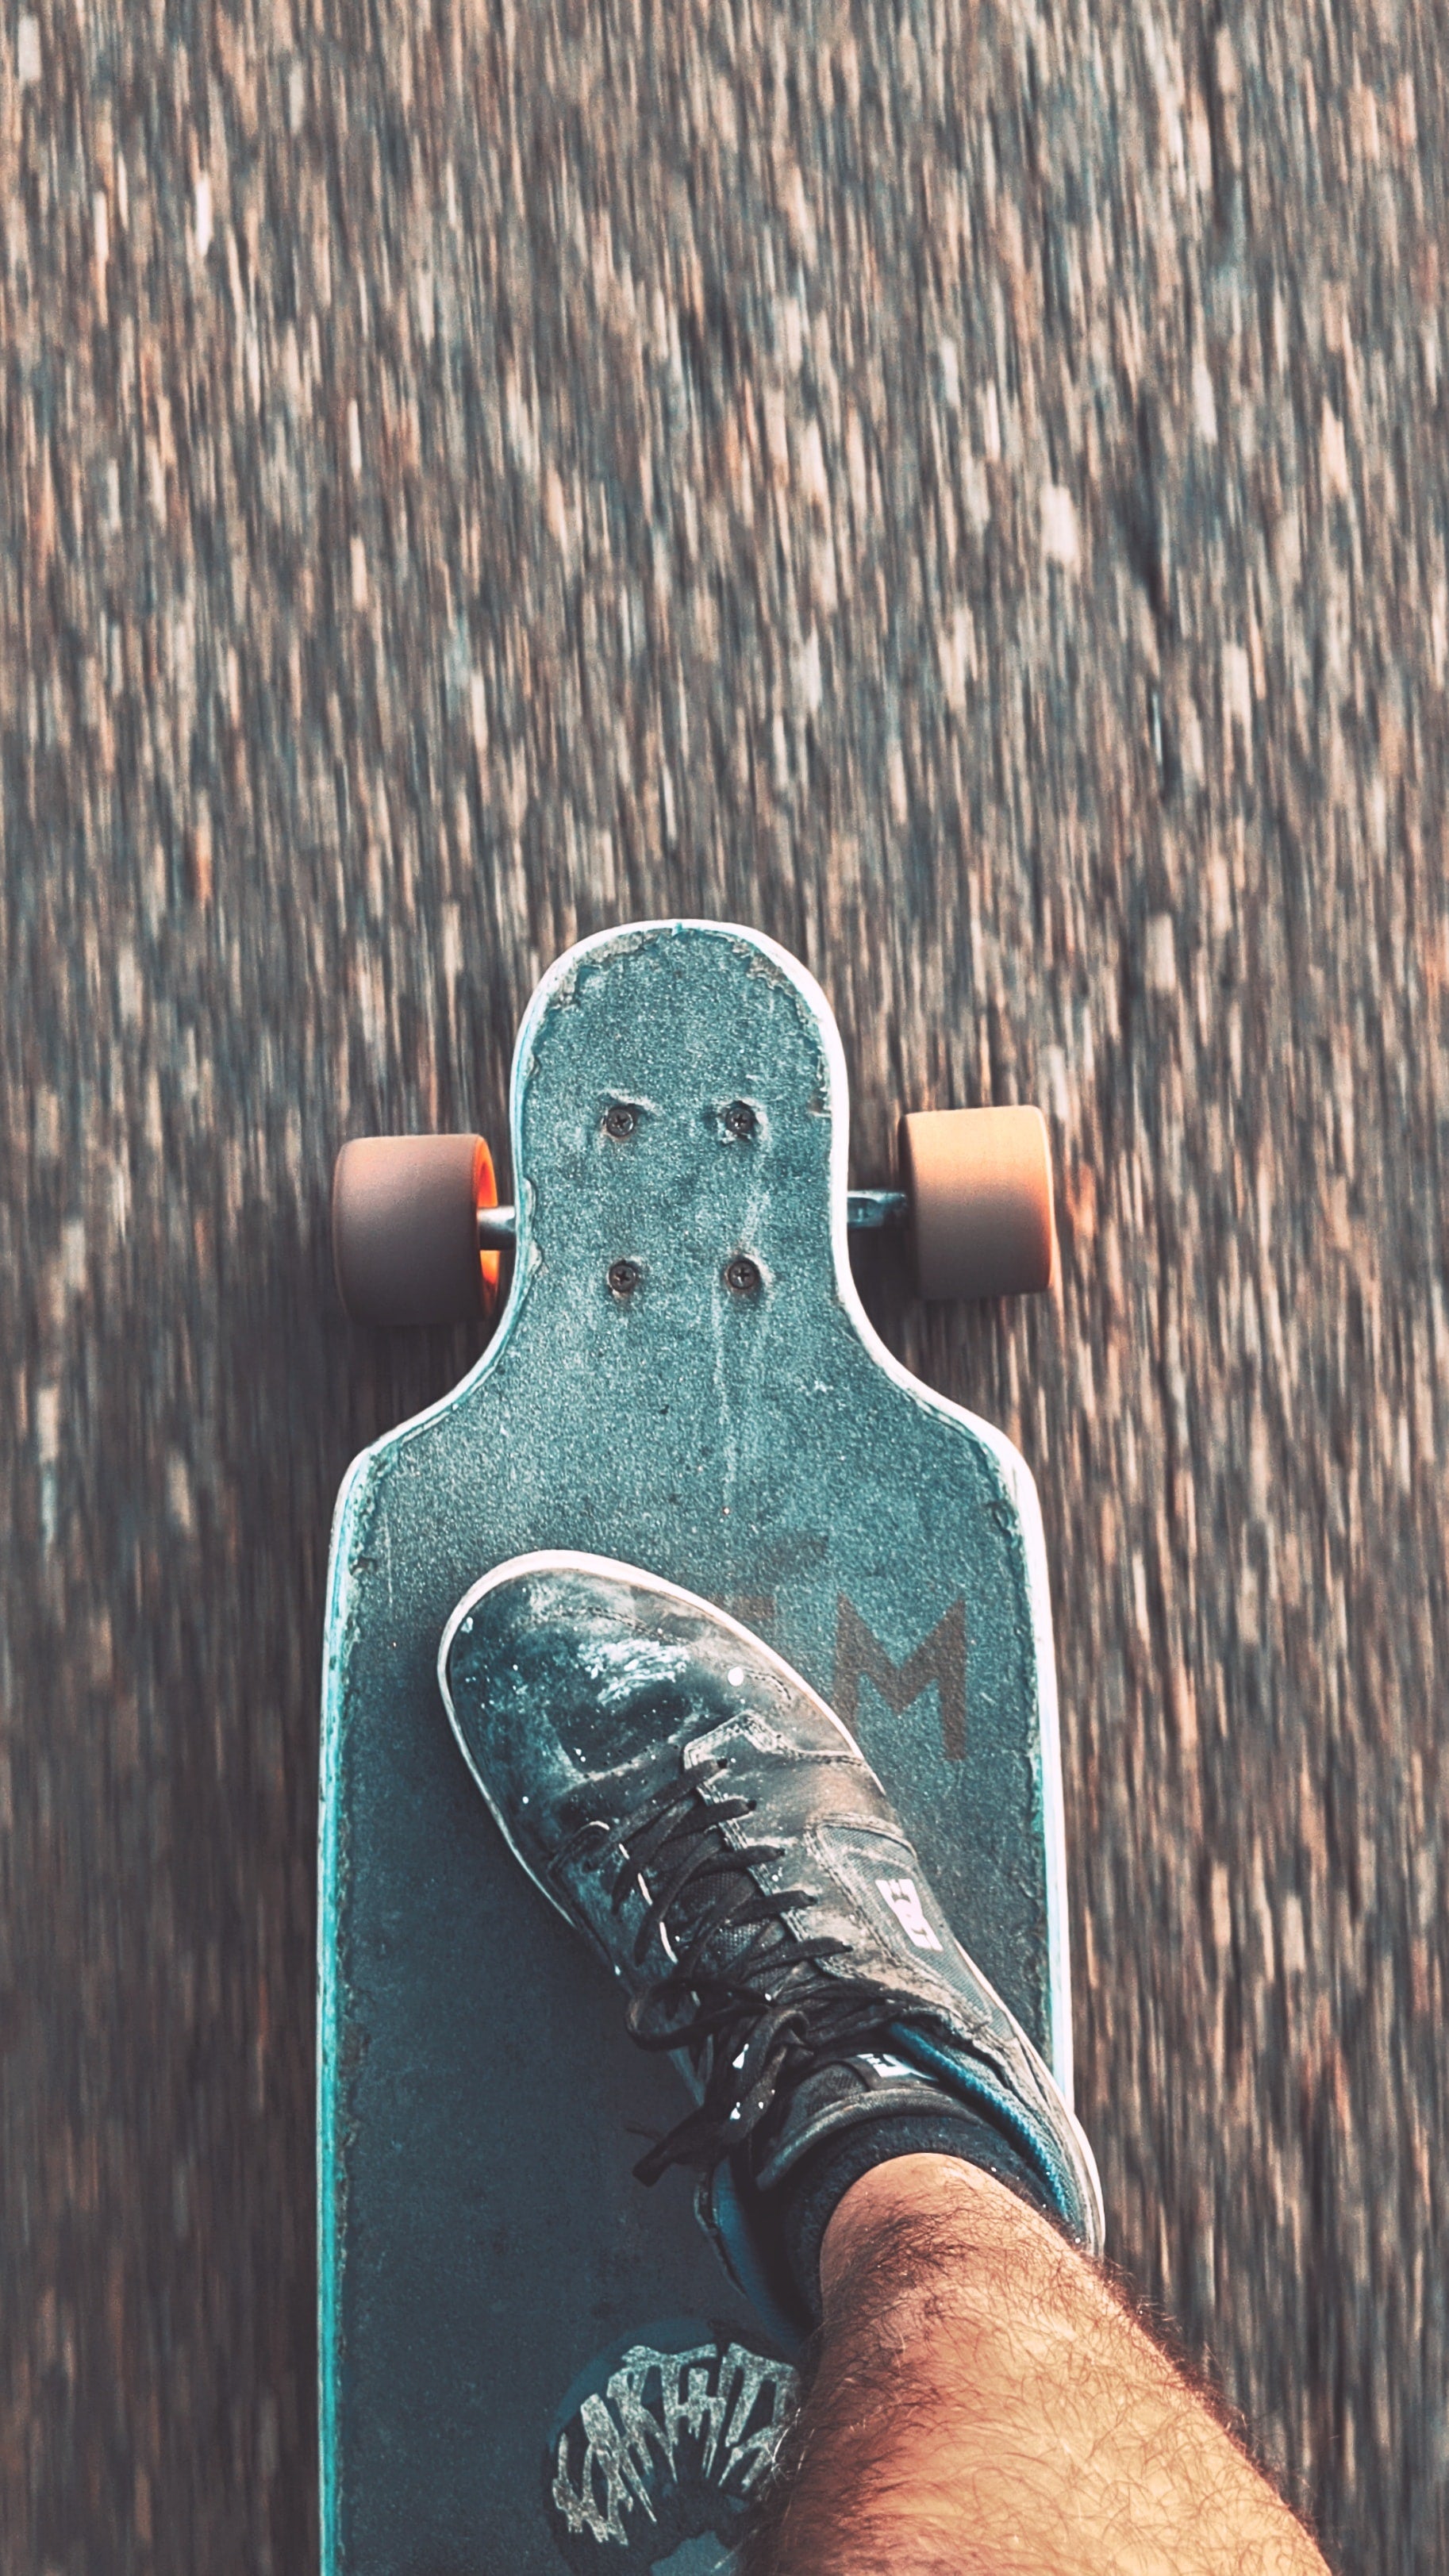 Skateboard Longboard